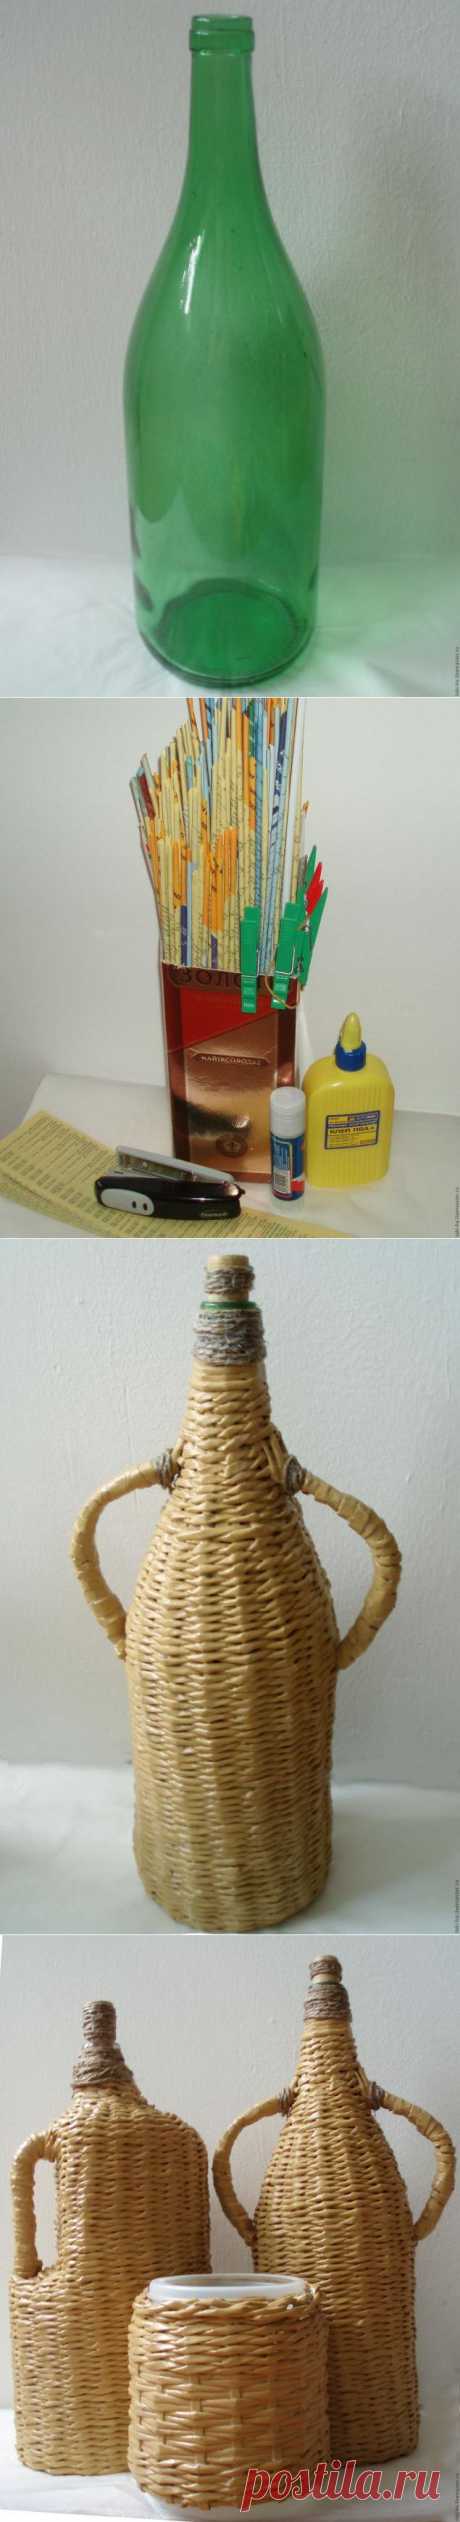 Оплетенный бутыль (Плетение из газет) - Ярмарка Мастеров - ручная работа, handmade